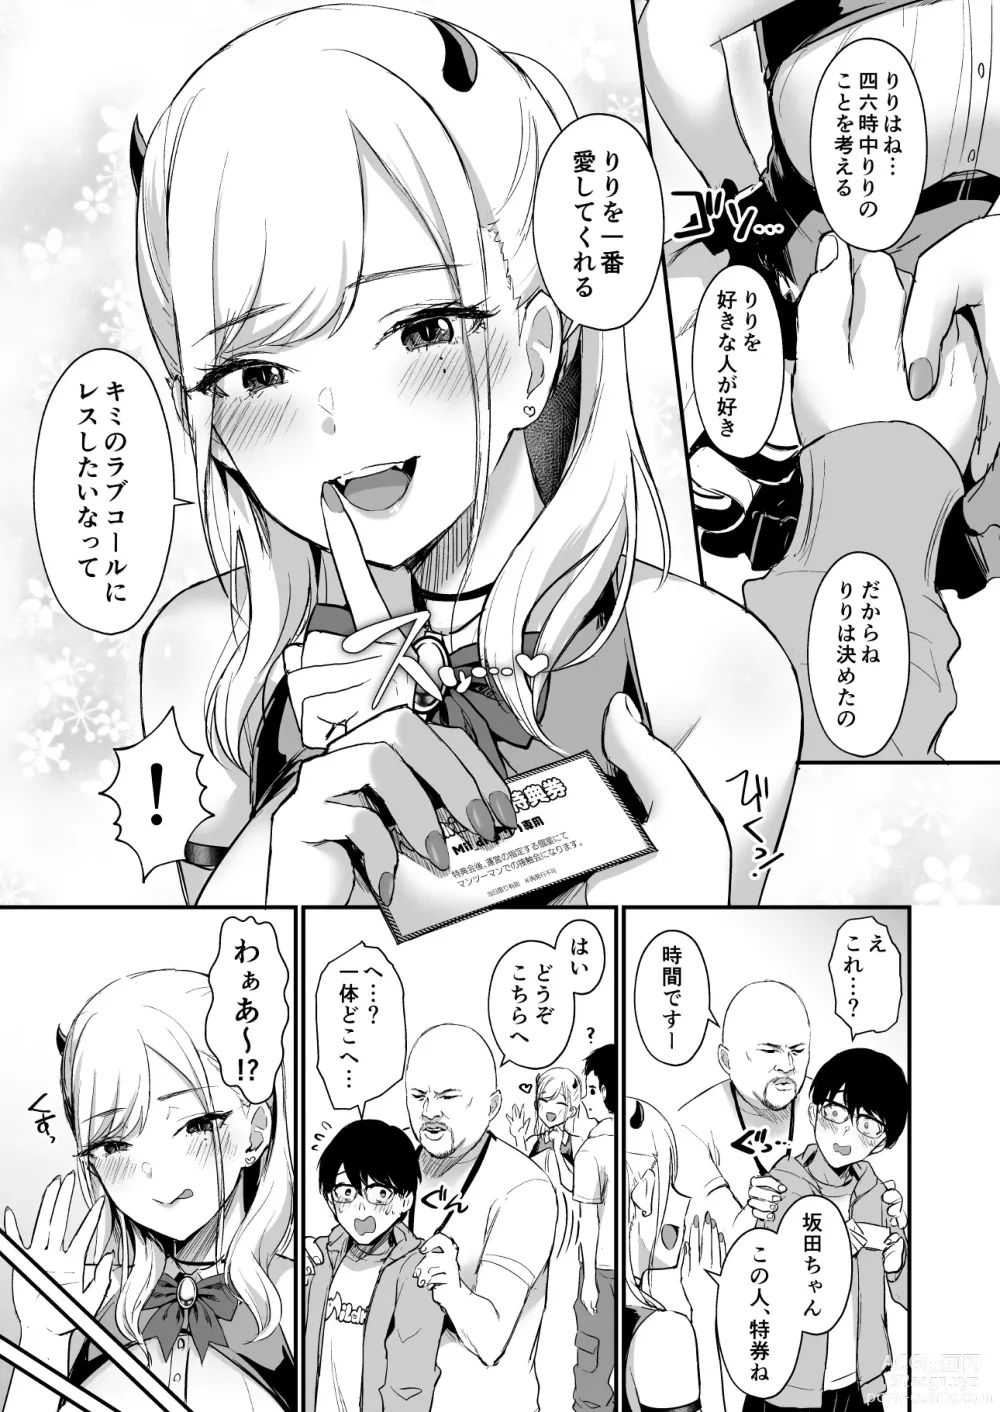 Page 8 of doujinshi 推しとエッチなことなんて無理無理無理～!!